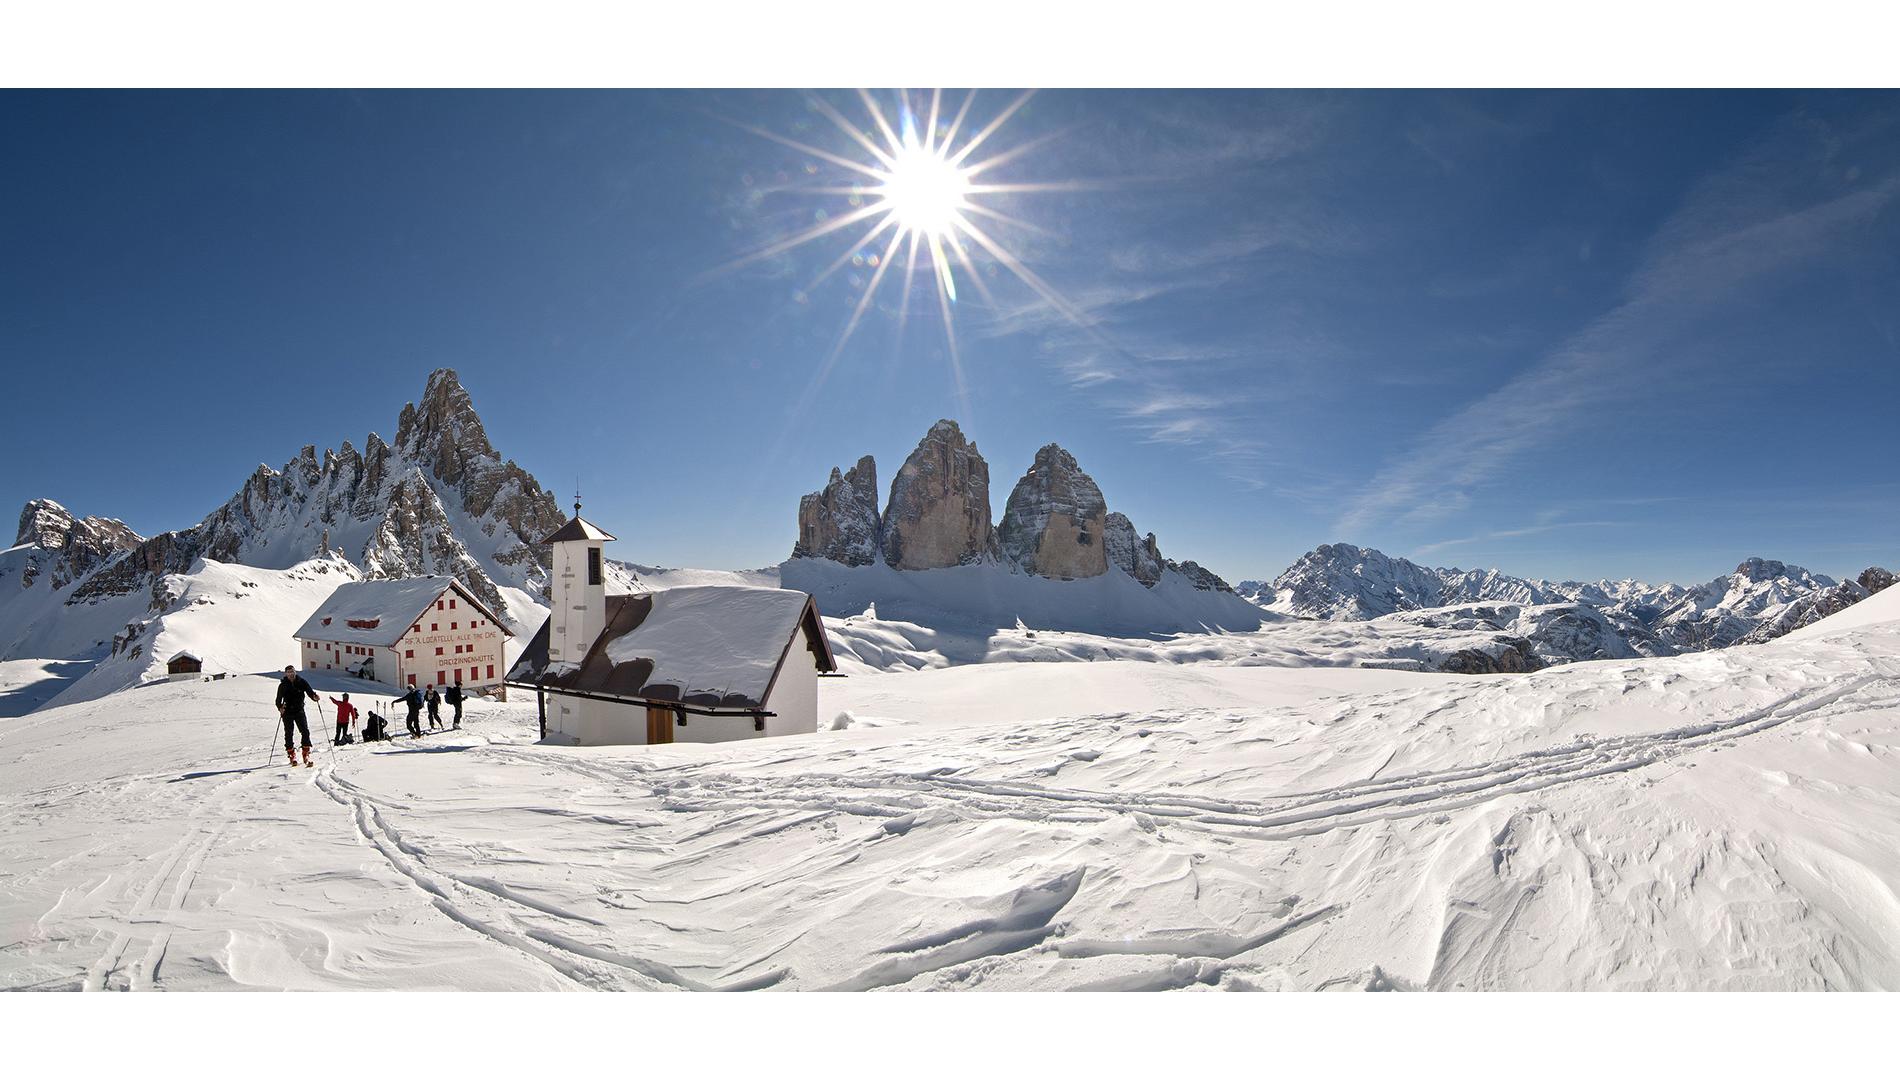 The 3 Zinnen Dolomites in winter